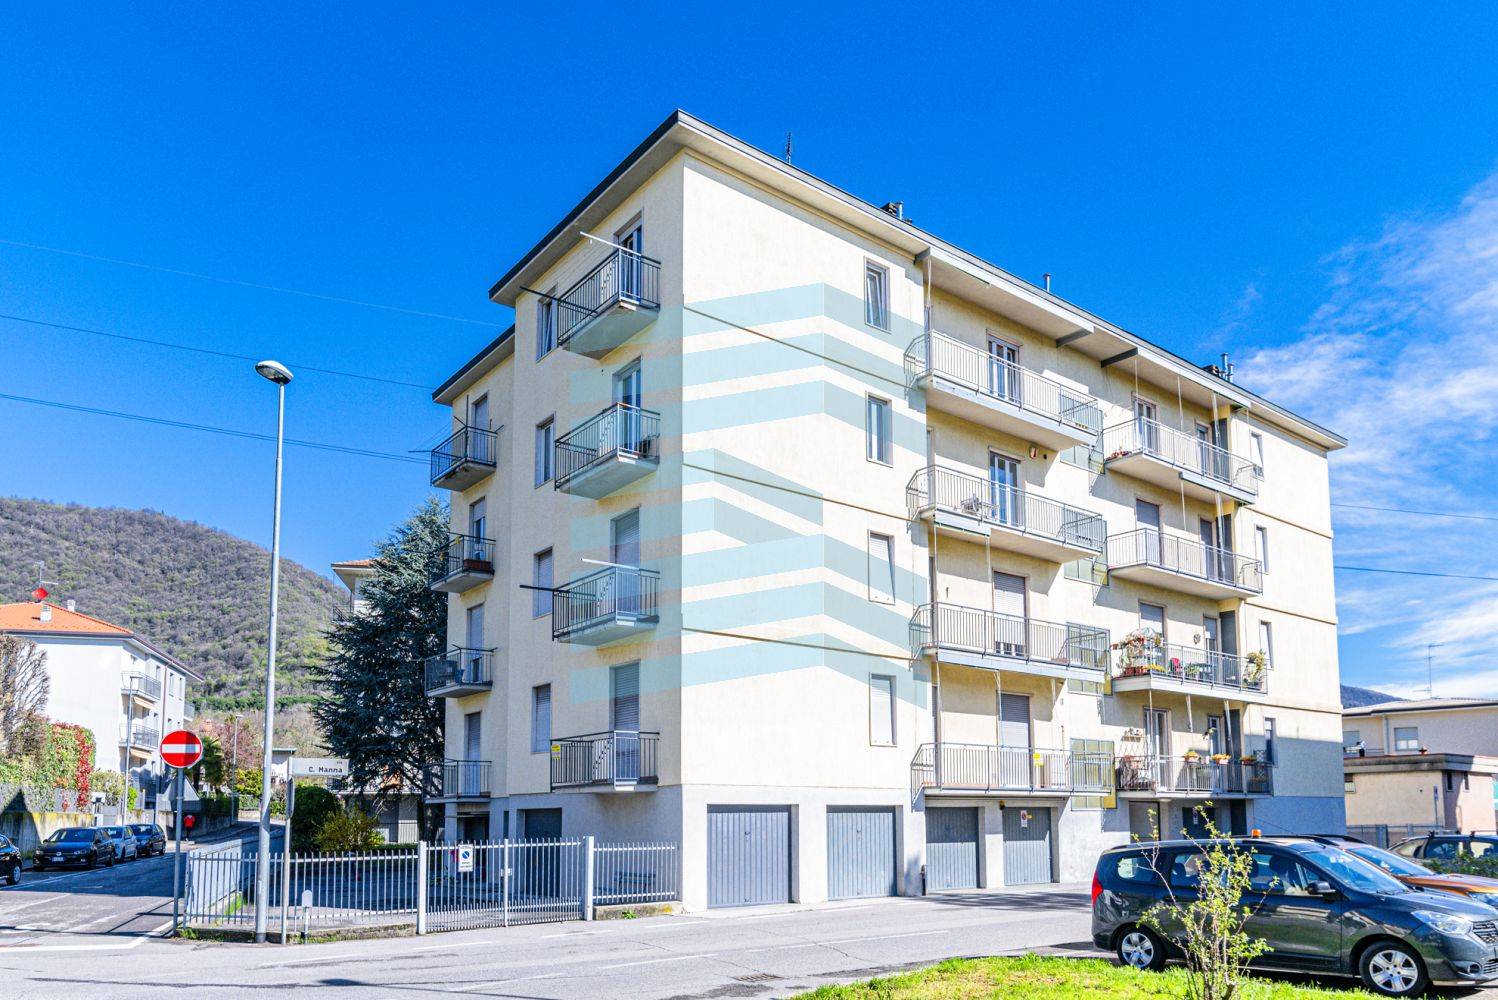 Appartamento in vendita a Torre Boldone, 3 locali, prezzo € 115.000 | PortaleAgenzieImmobiliari.it